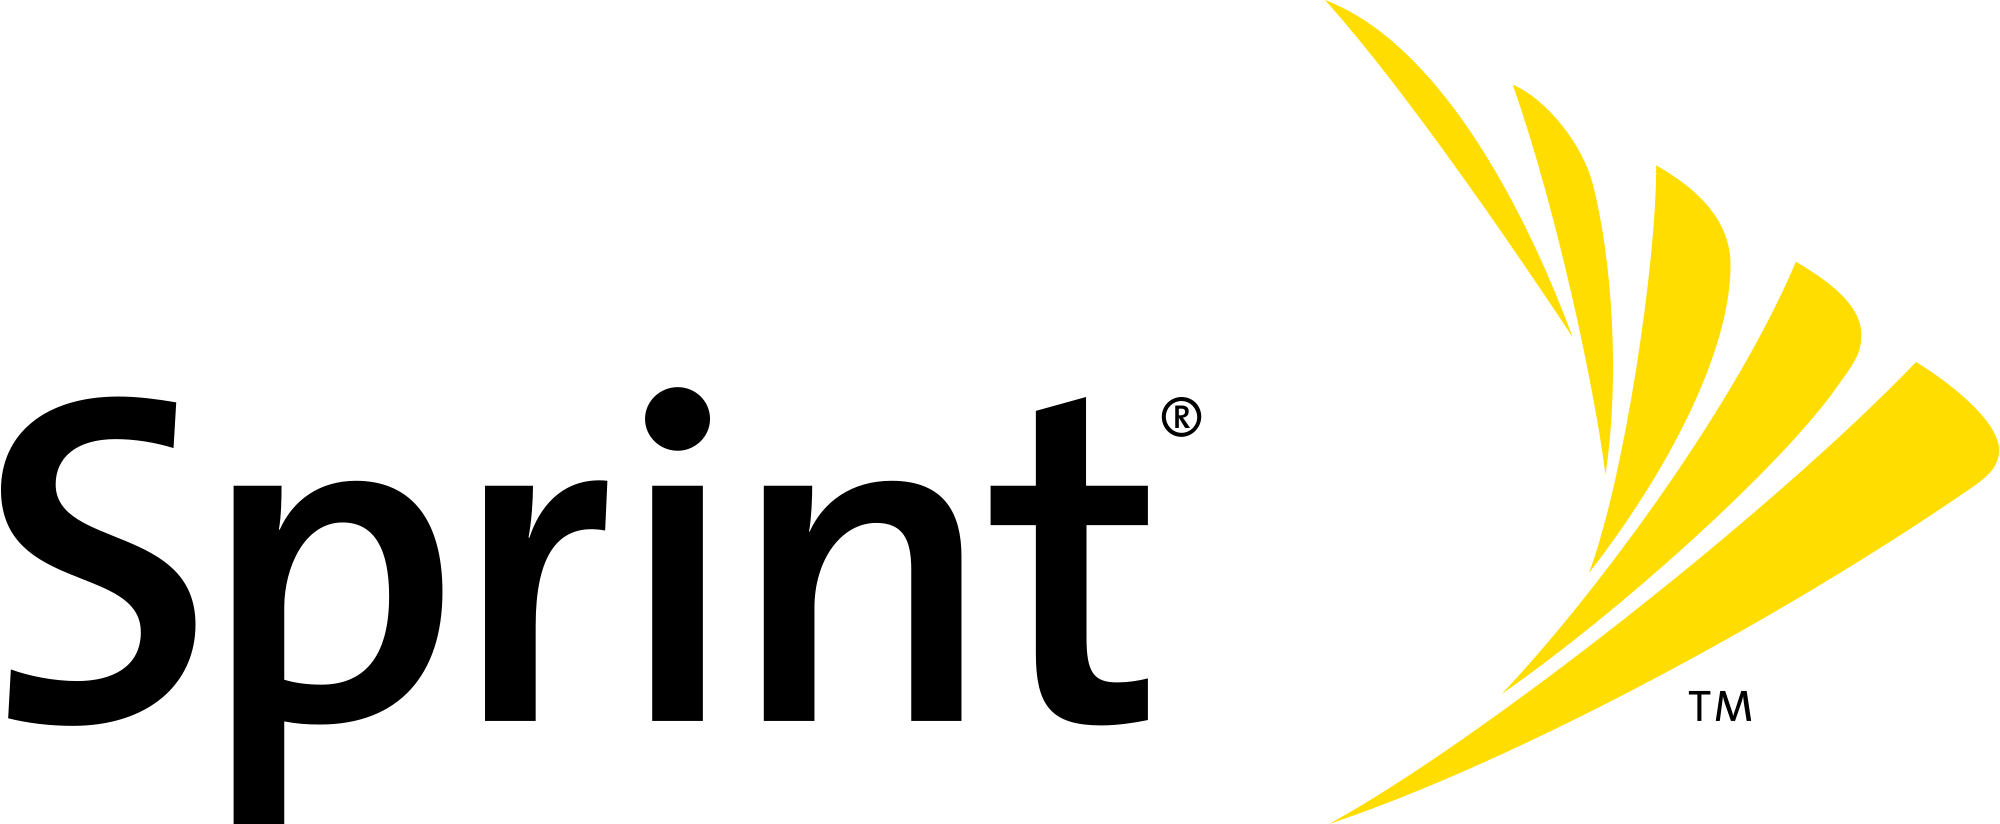 Sprint.com Logo - Sprint Nextel logo.svg